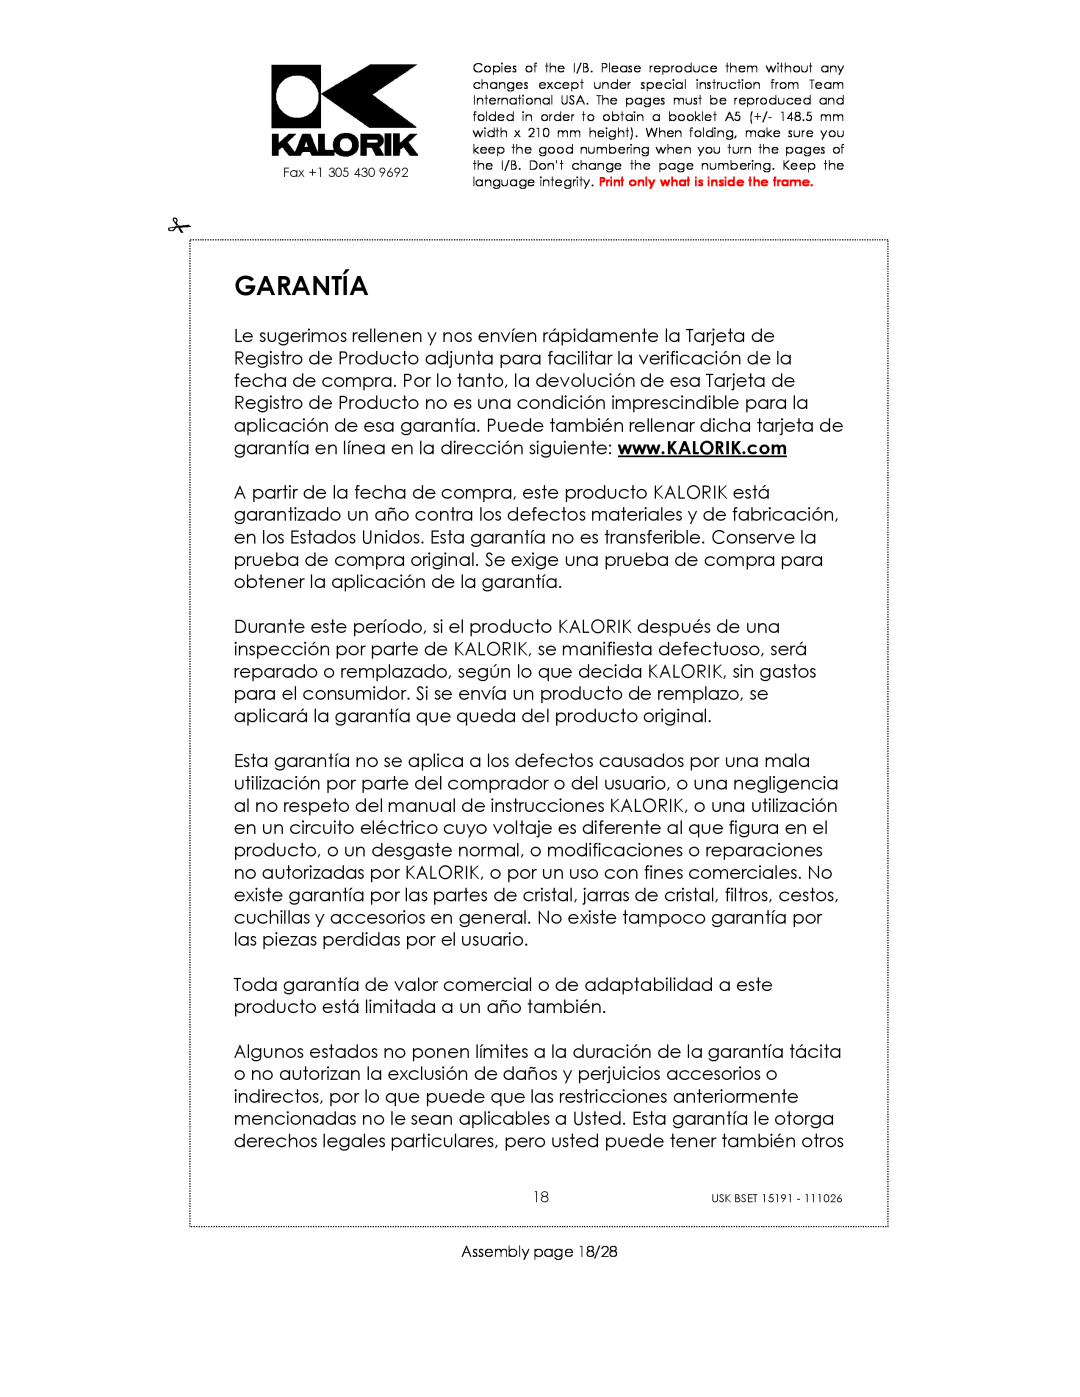 Kalorik USK BSET 15191 manual Garantía, Assembly page 18/28 